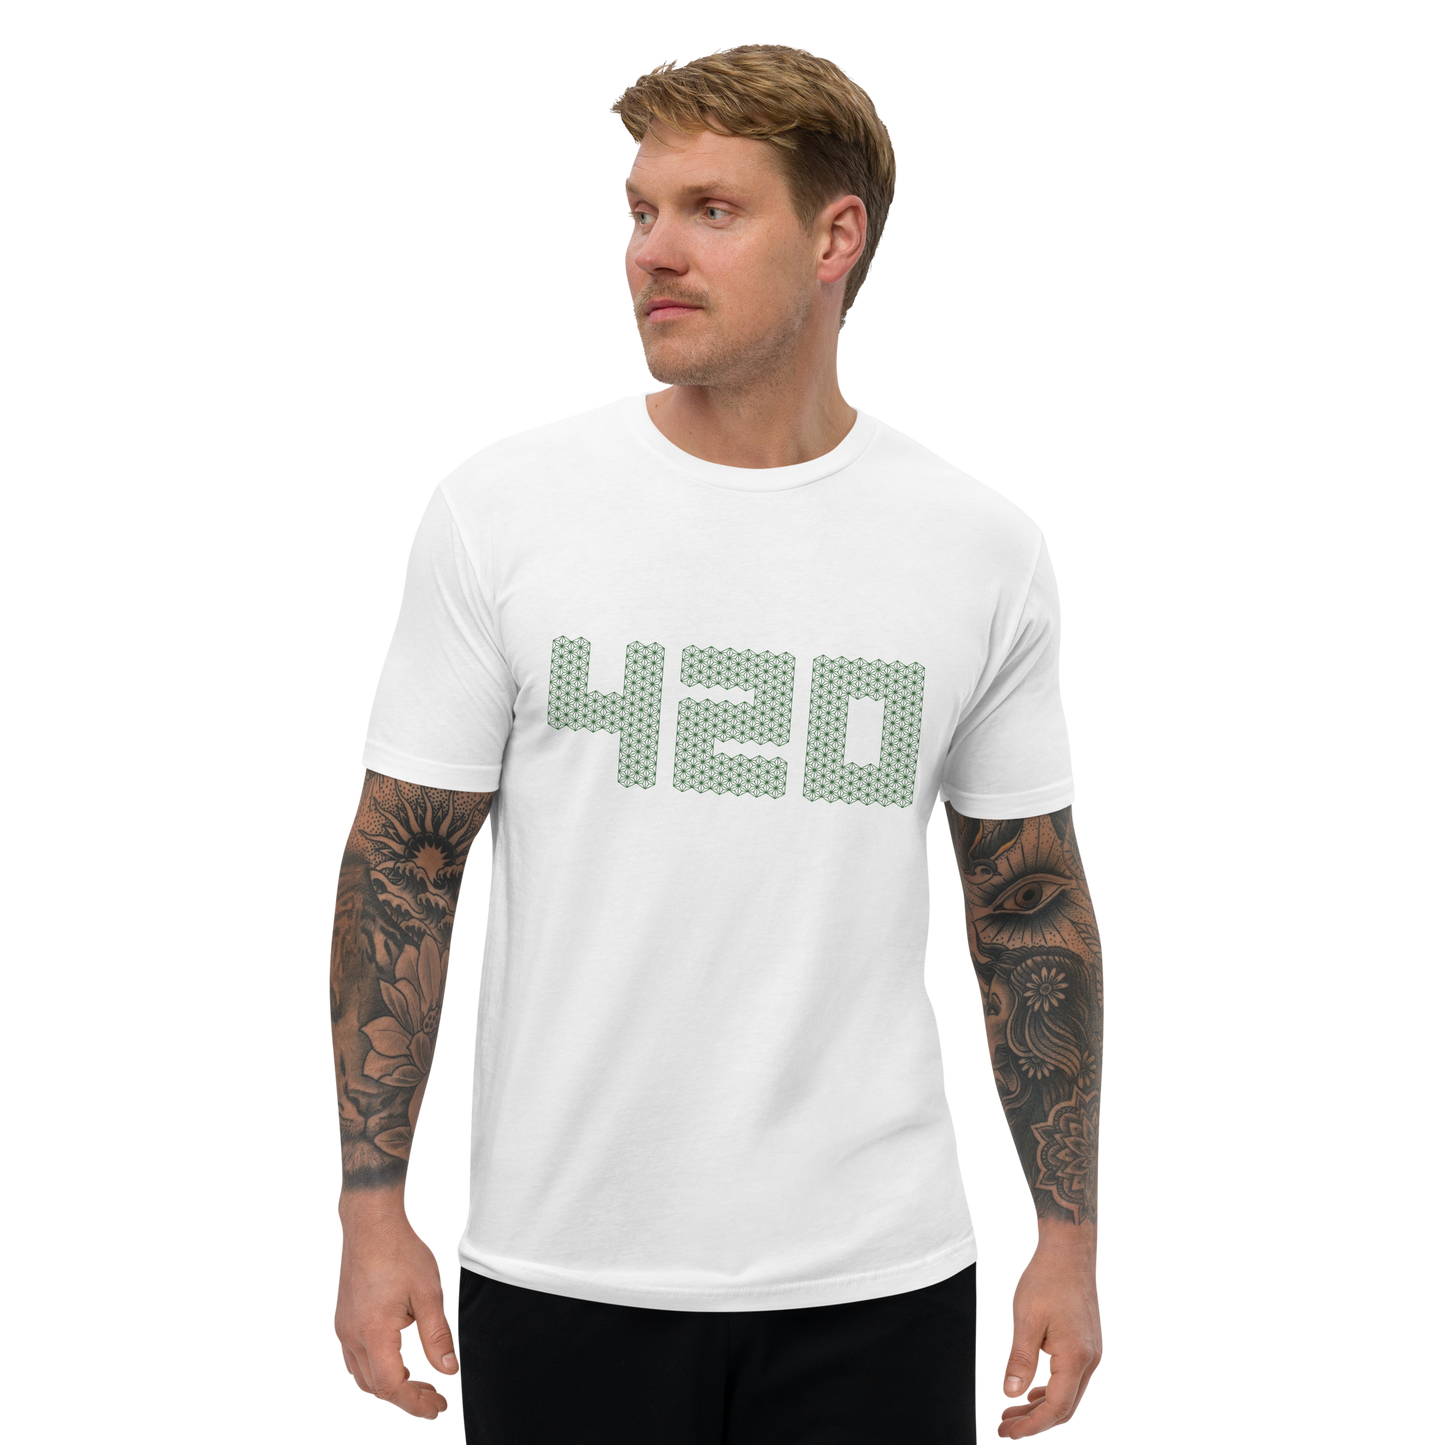 [420] Camiseta original (hombre)